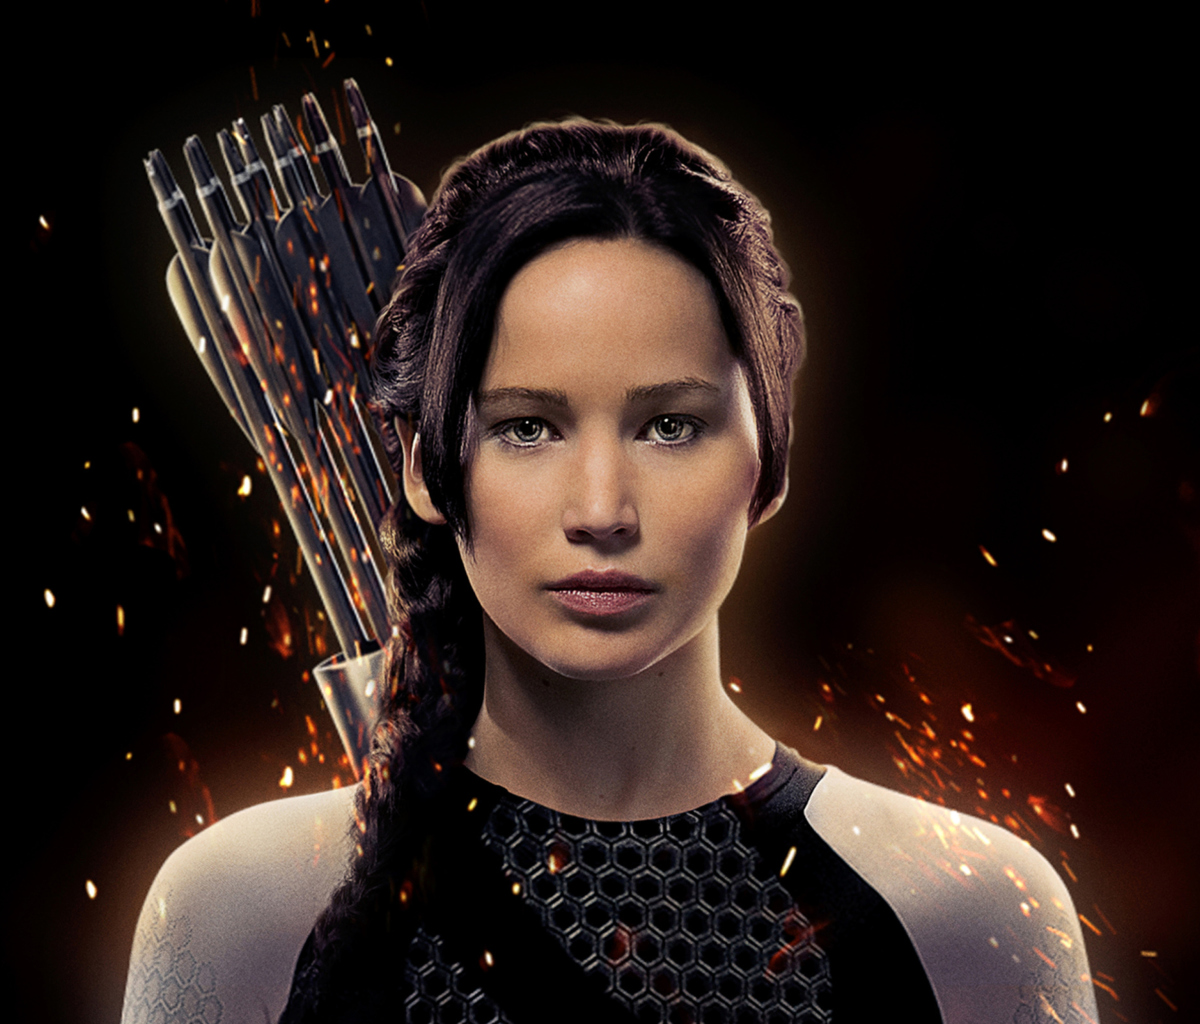 Das The Hunger Games: Catching Fire Wallpaper 1200x1024